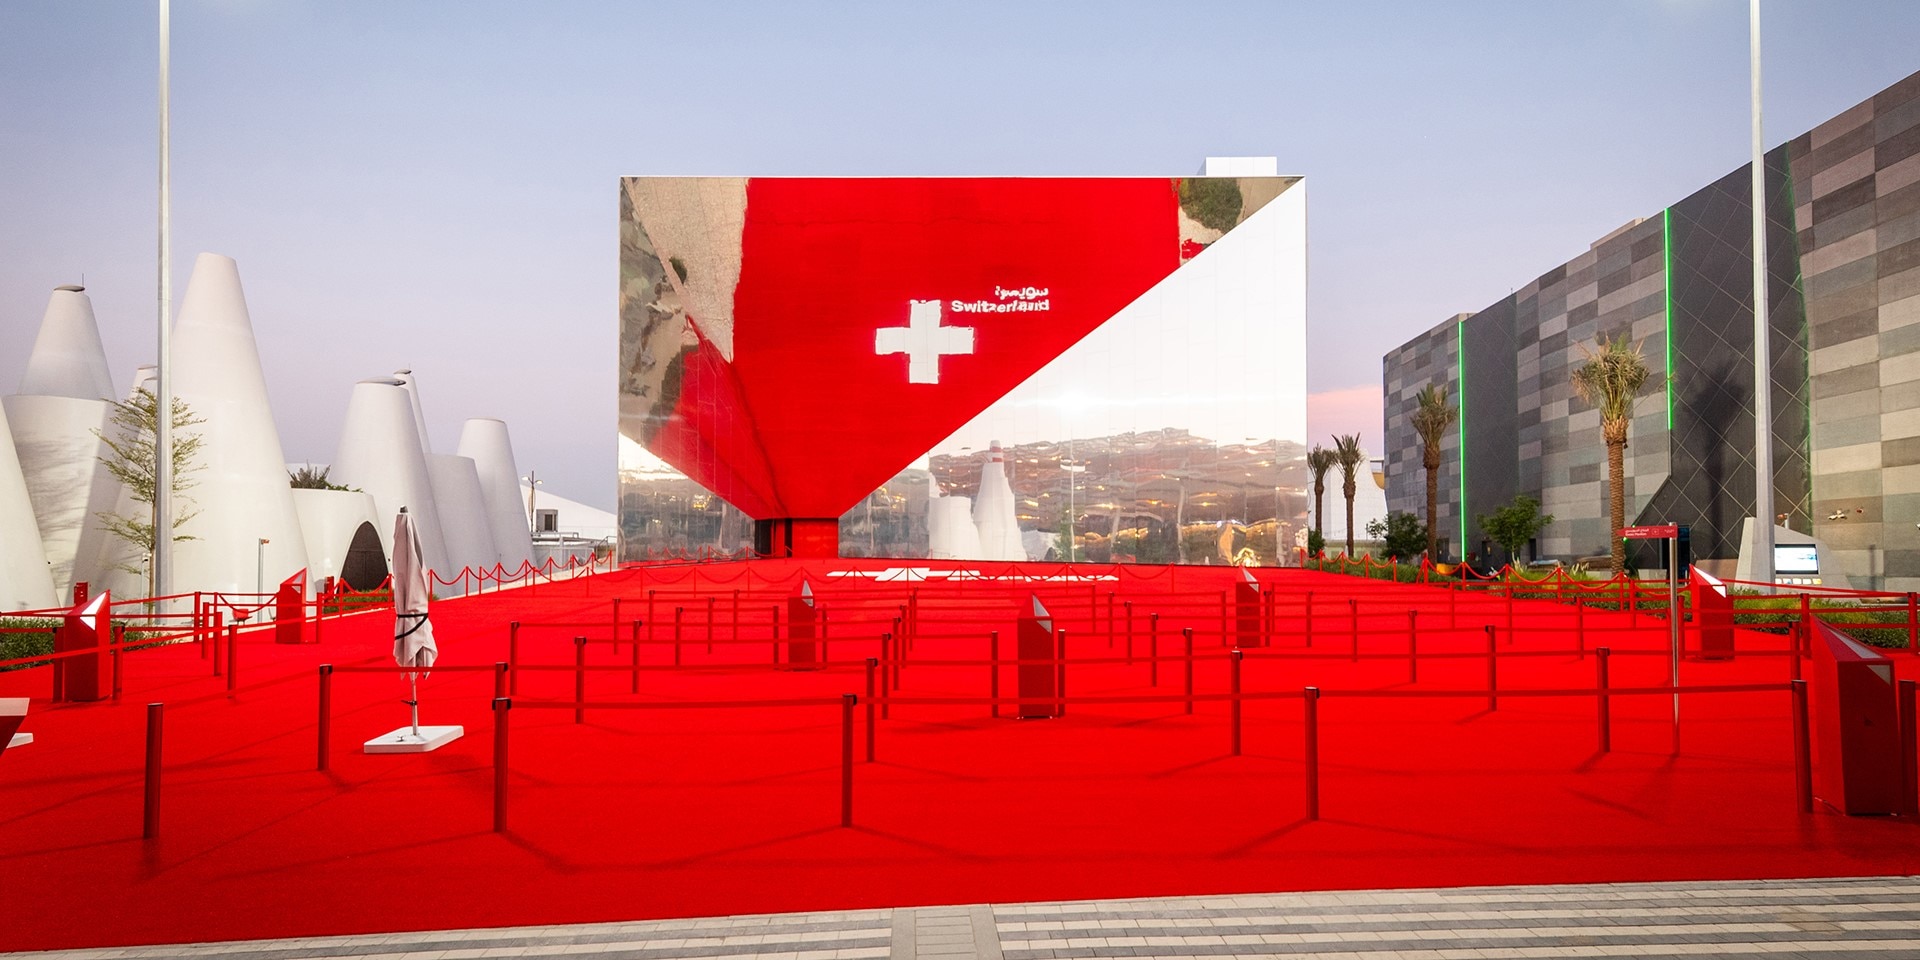 Panoramica dell'ingresso del padiglione svizzero